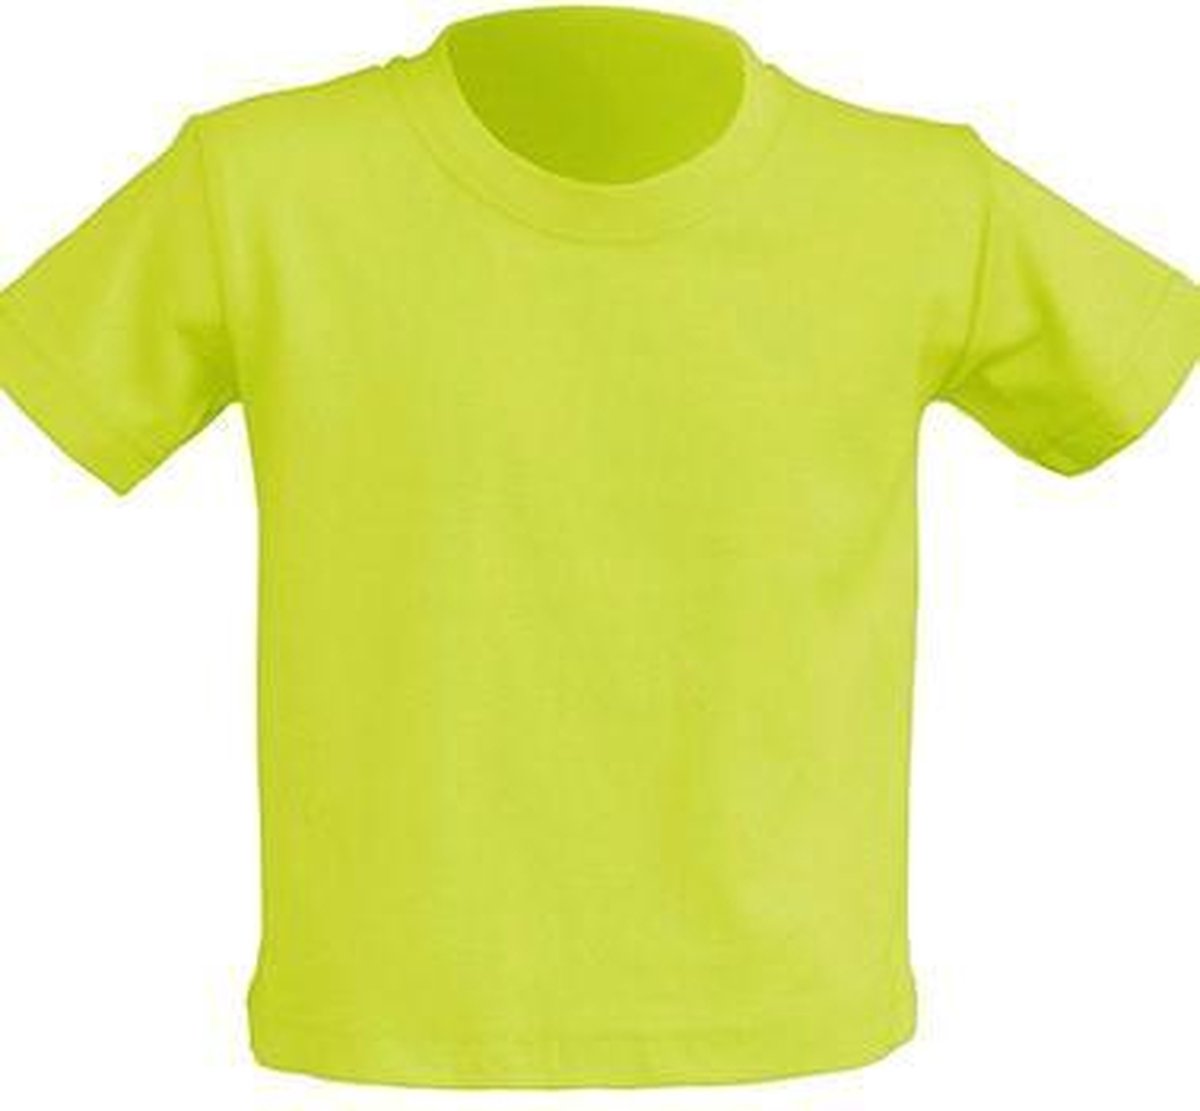 JHK Baby t-shirtjes in pistachio maat 1 jaar - set van 5 stuks